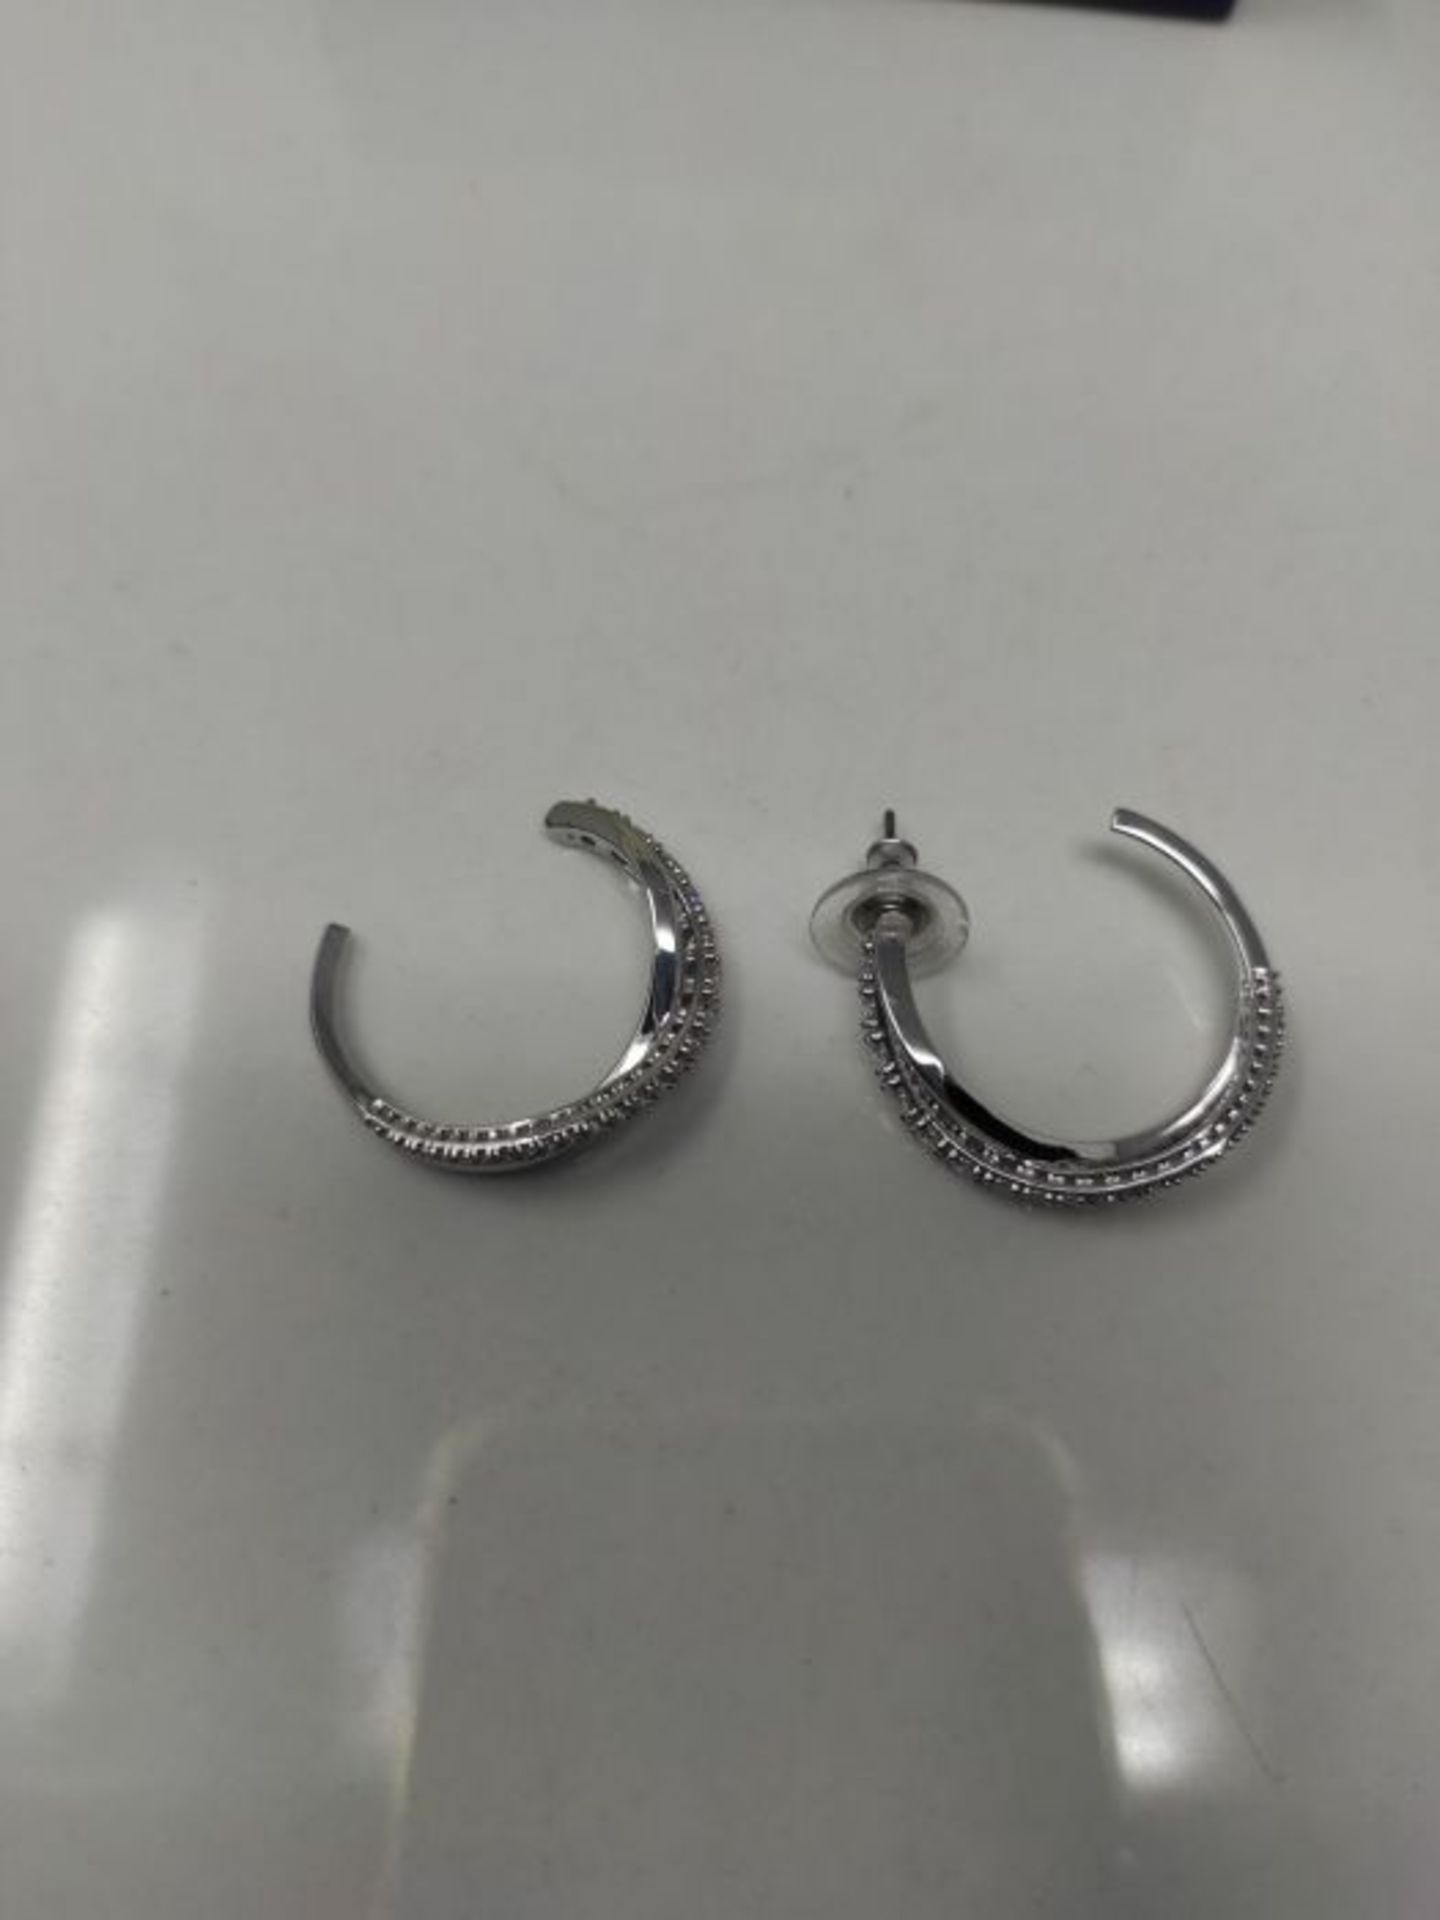 RRP £86.00 [CRACKED] Swarovski Women's Twist Hoop Pierced Earrings Set of Brilliant White Crystal - Image 3 of 3